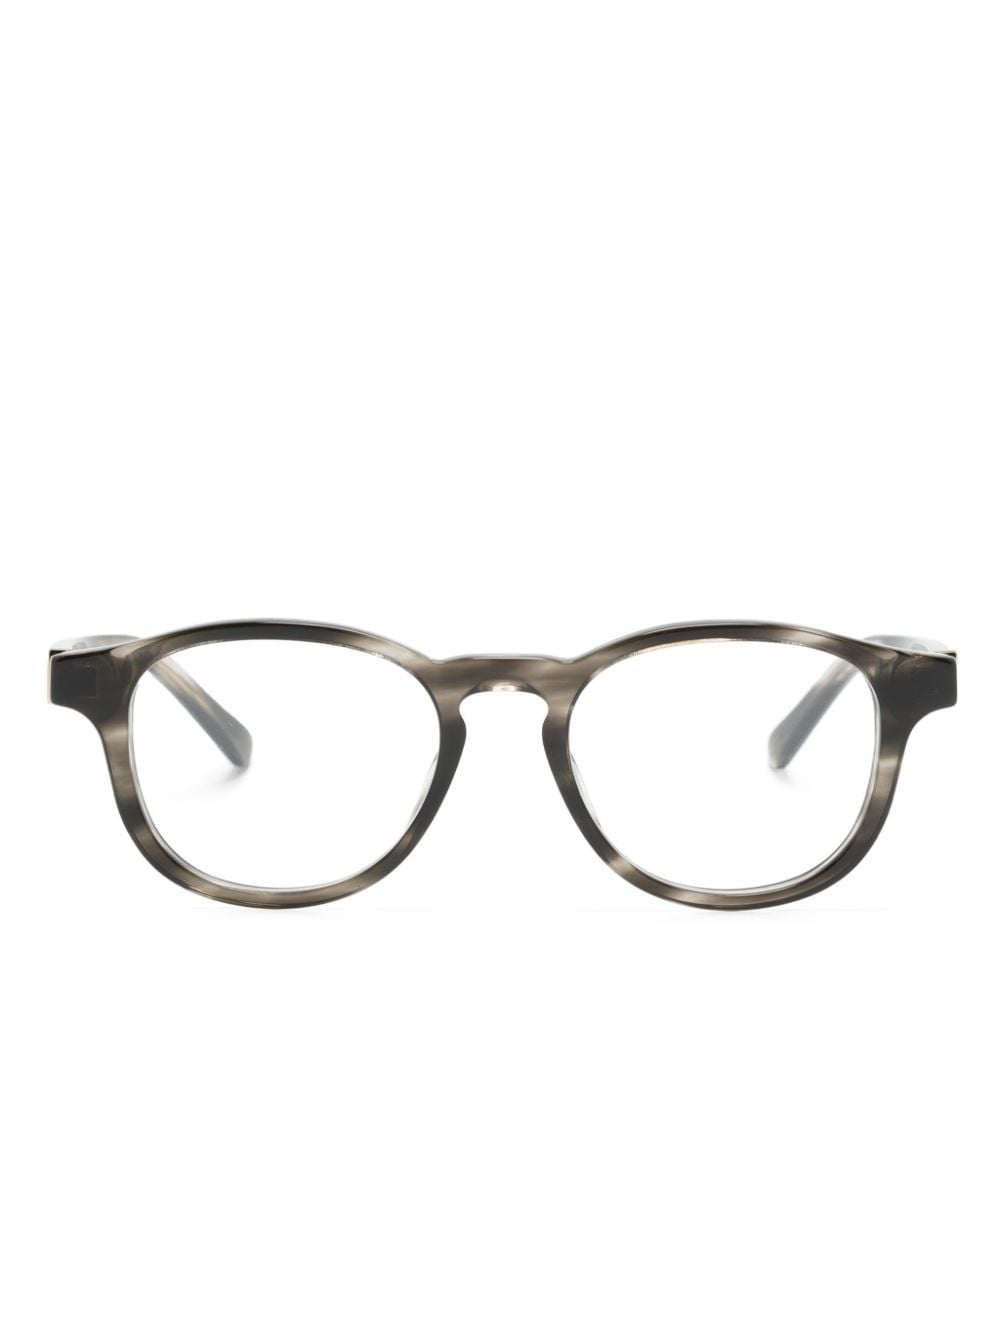 round-frame glasses